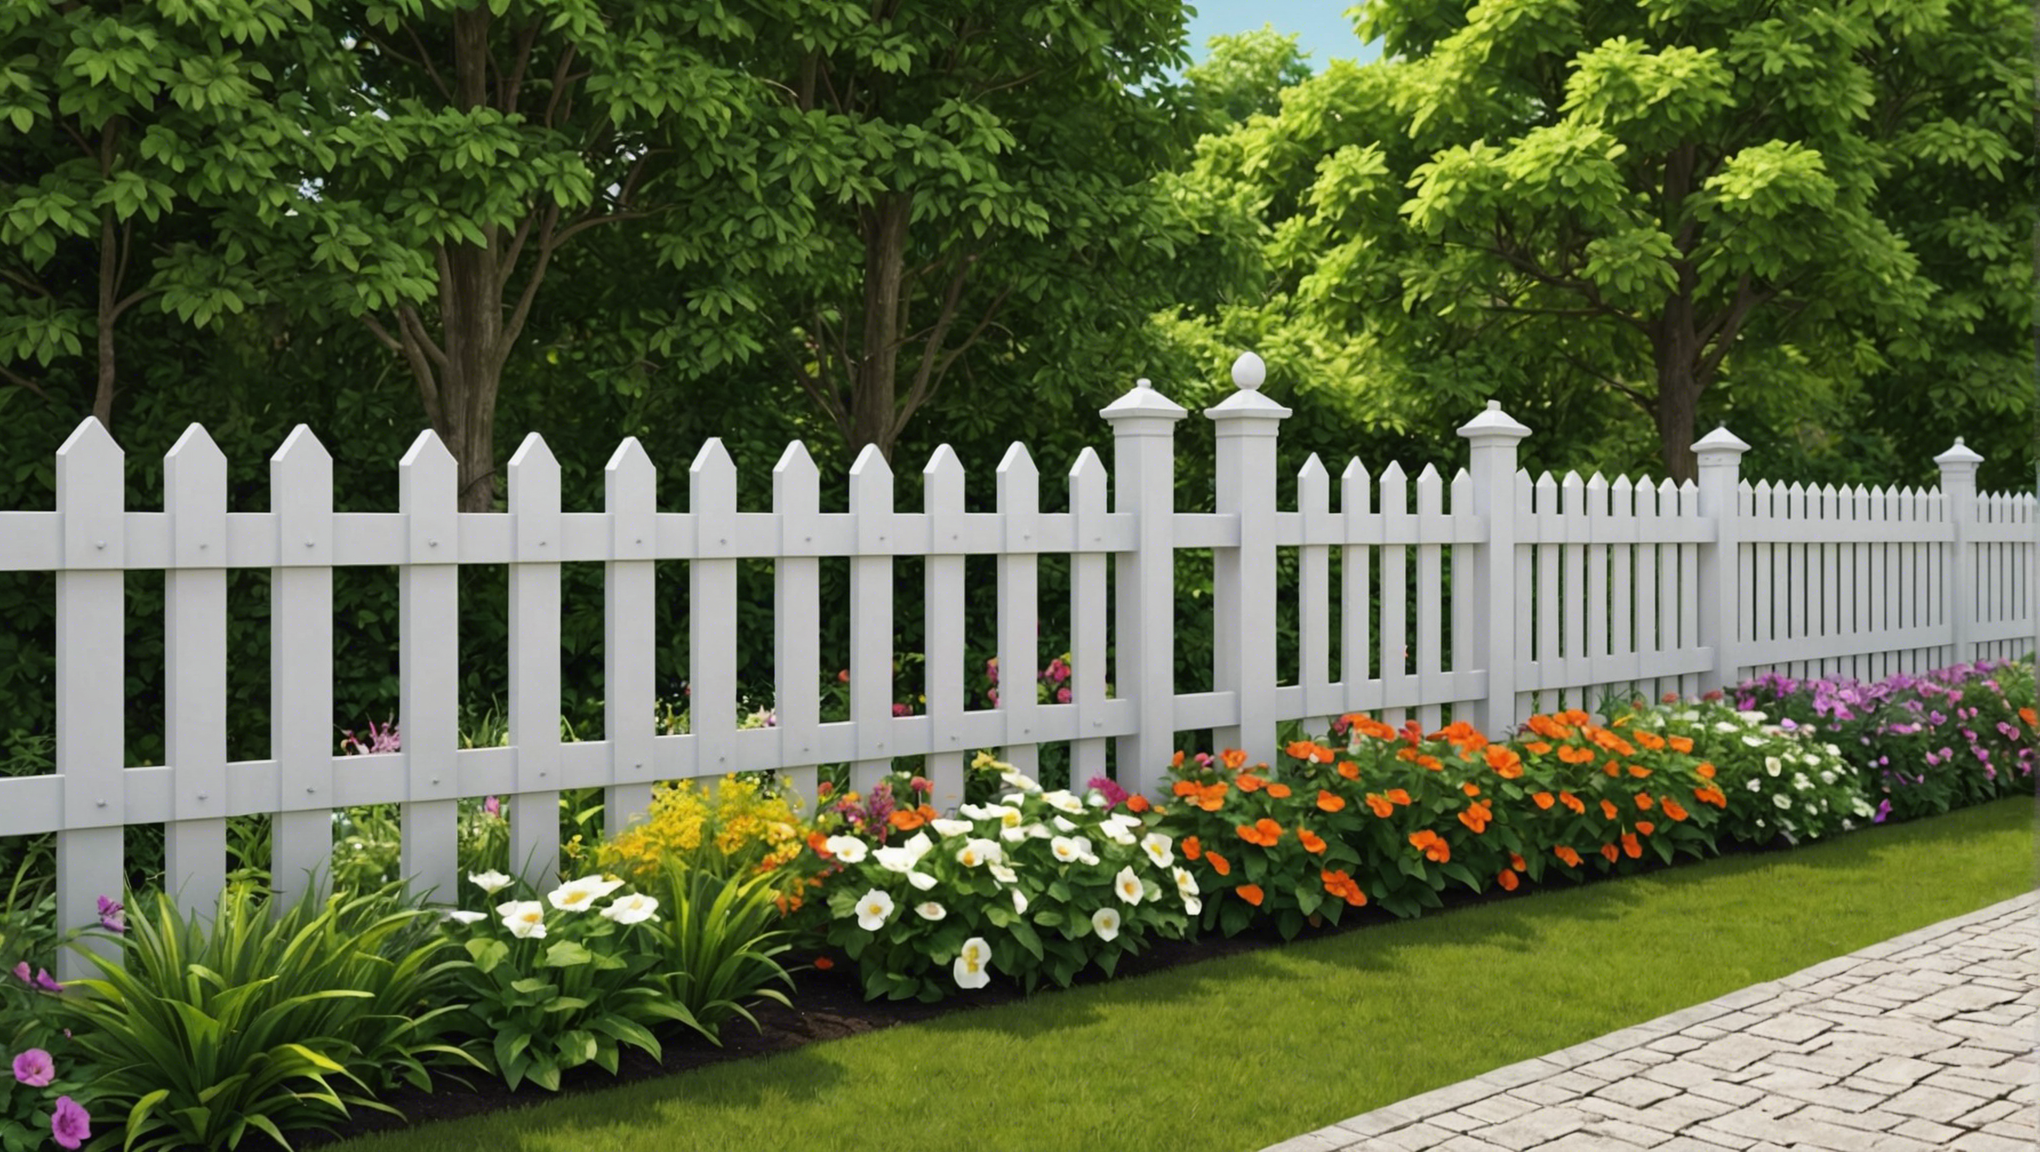 découvrez nos conseils pour aménager une clôture et mettre en valeur votre jardin de la meilleure des façons. des idées pour sublimer votre espace extérieur.